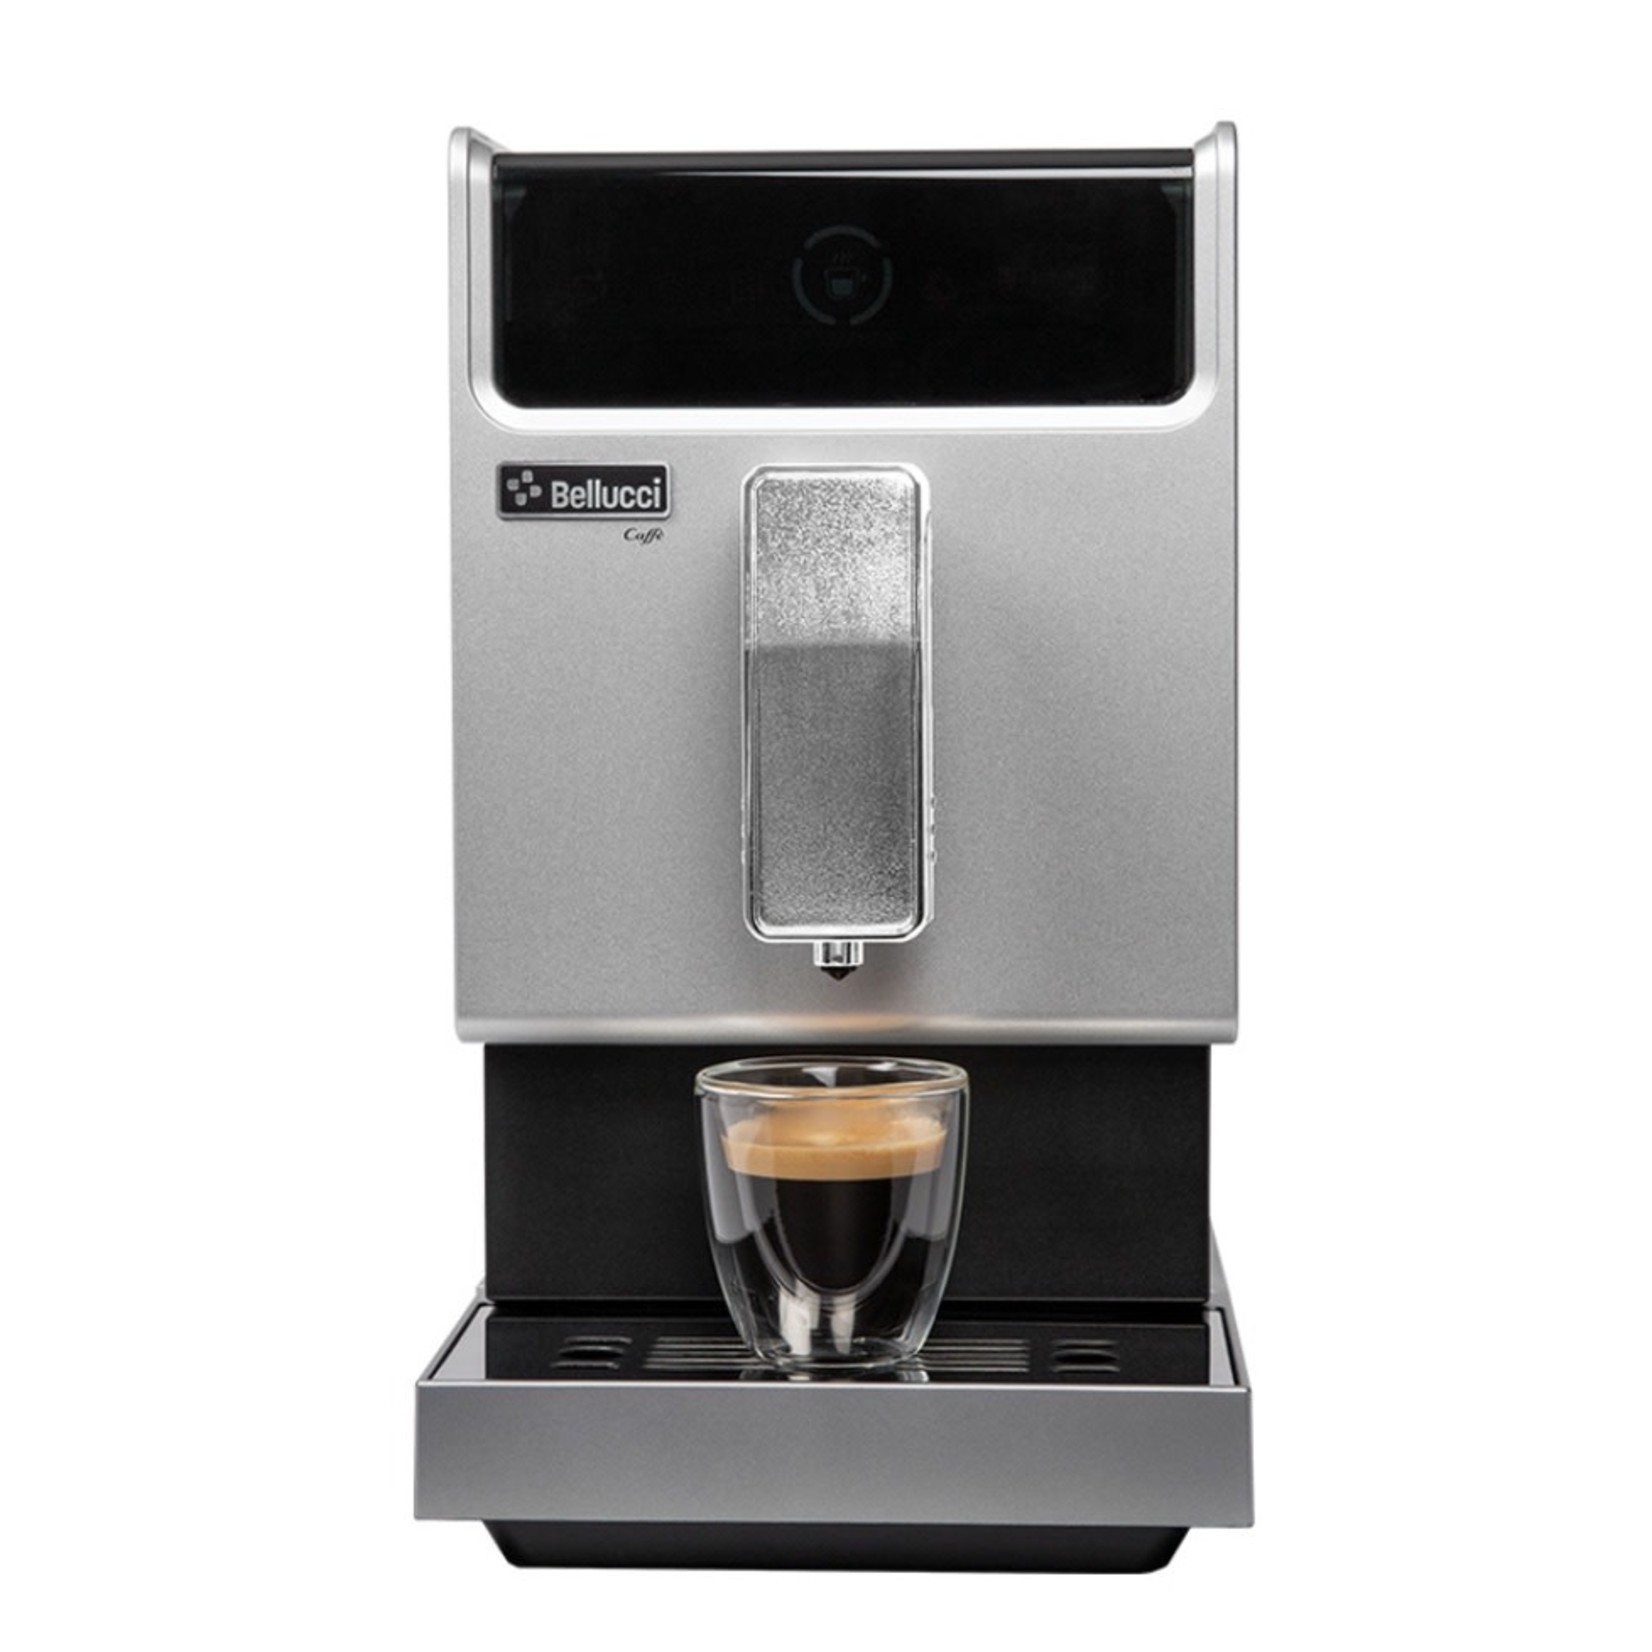 BELLUCCI BELLUCCI Slim Vapore Espresso Machine